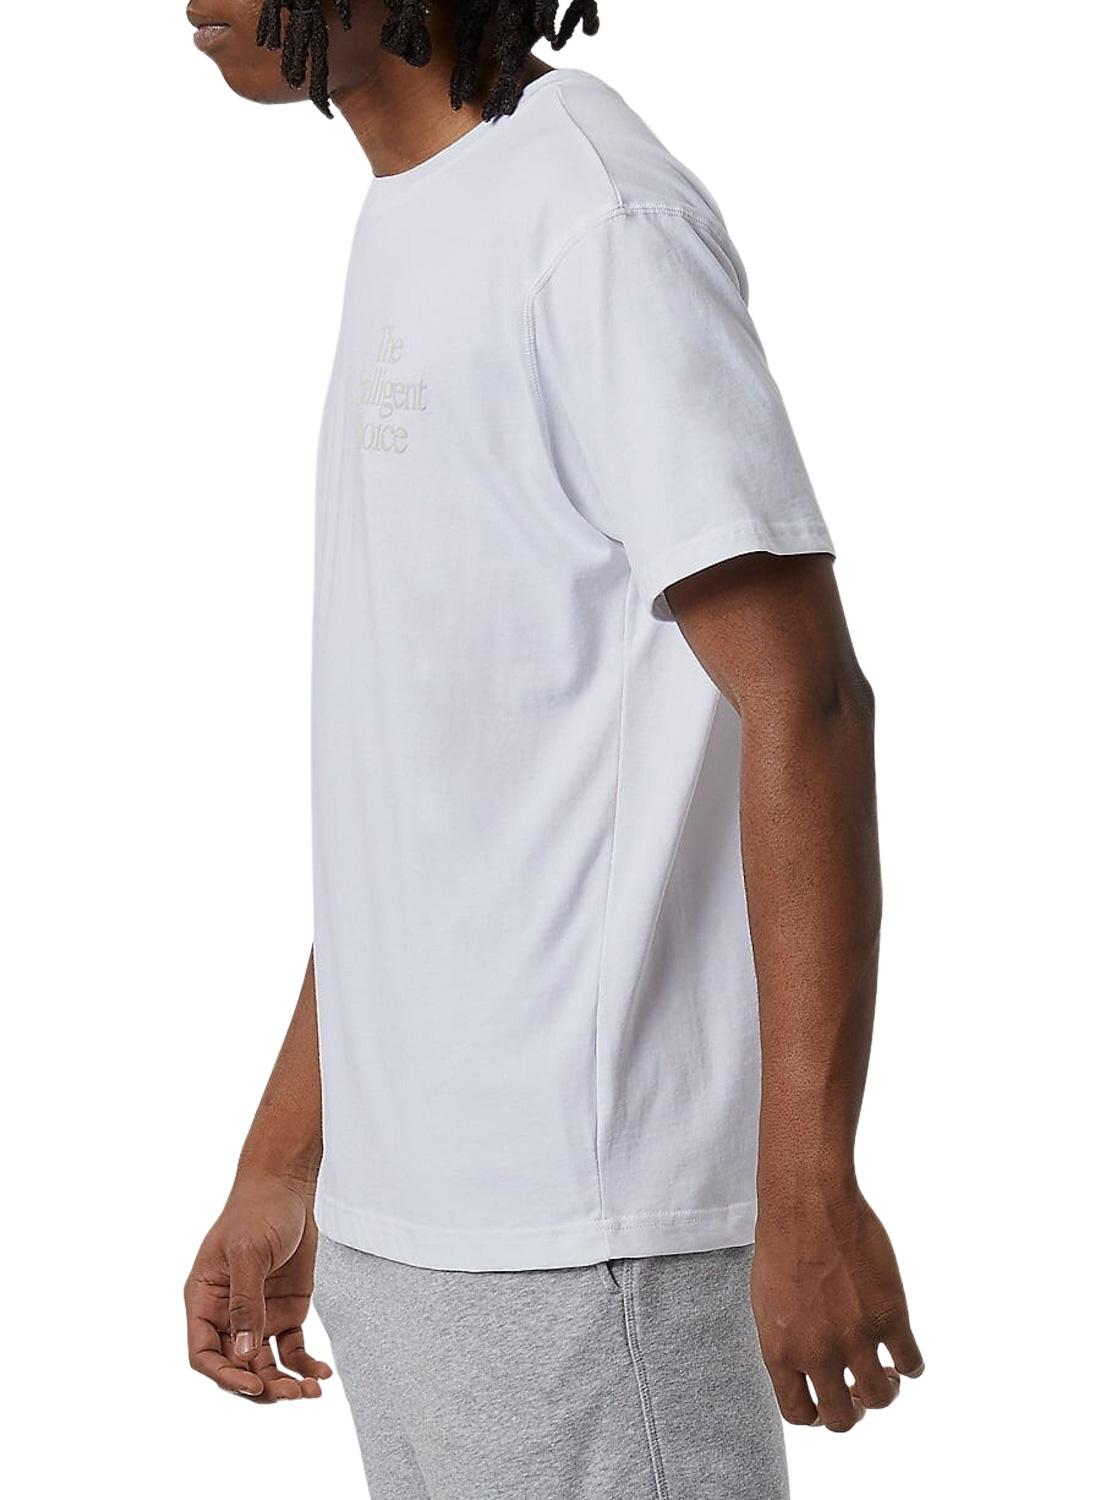 T-Shirt New Balance Intelligent Choice Bianco